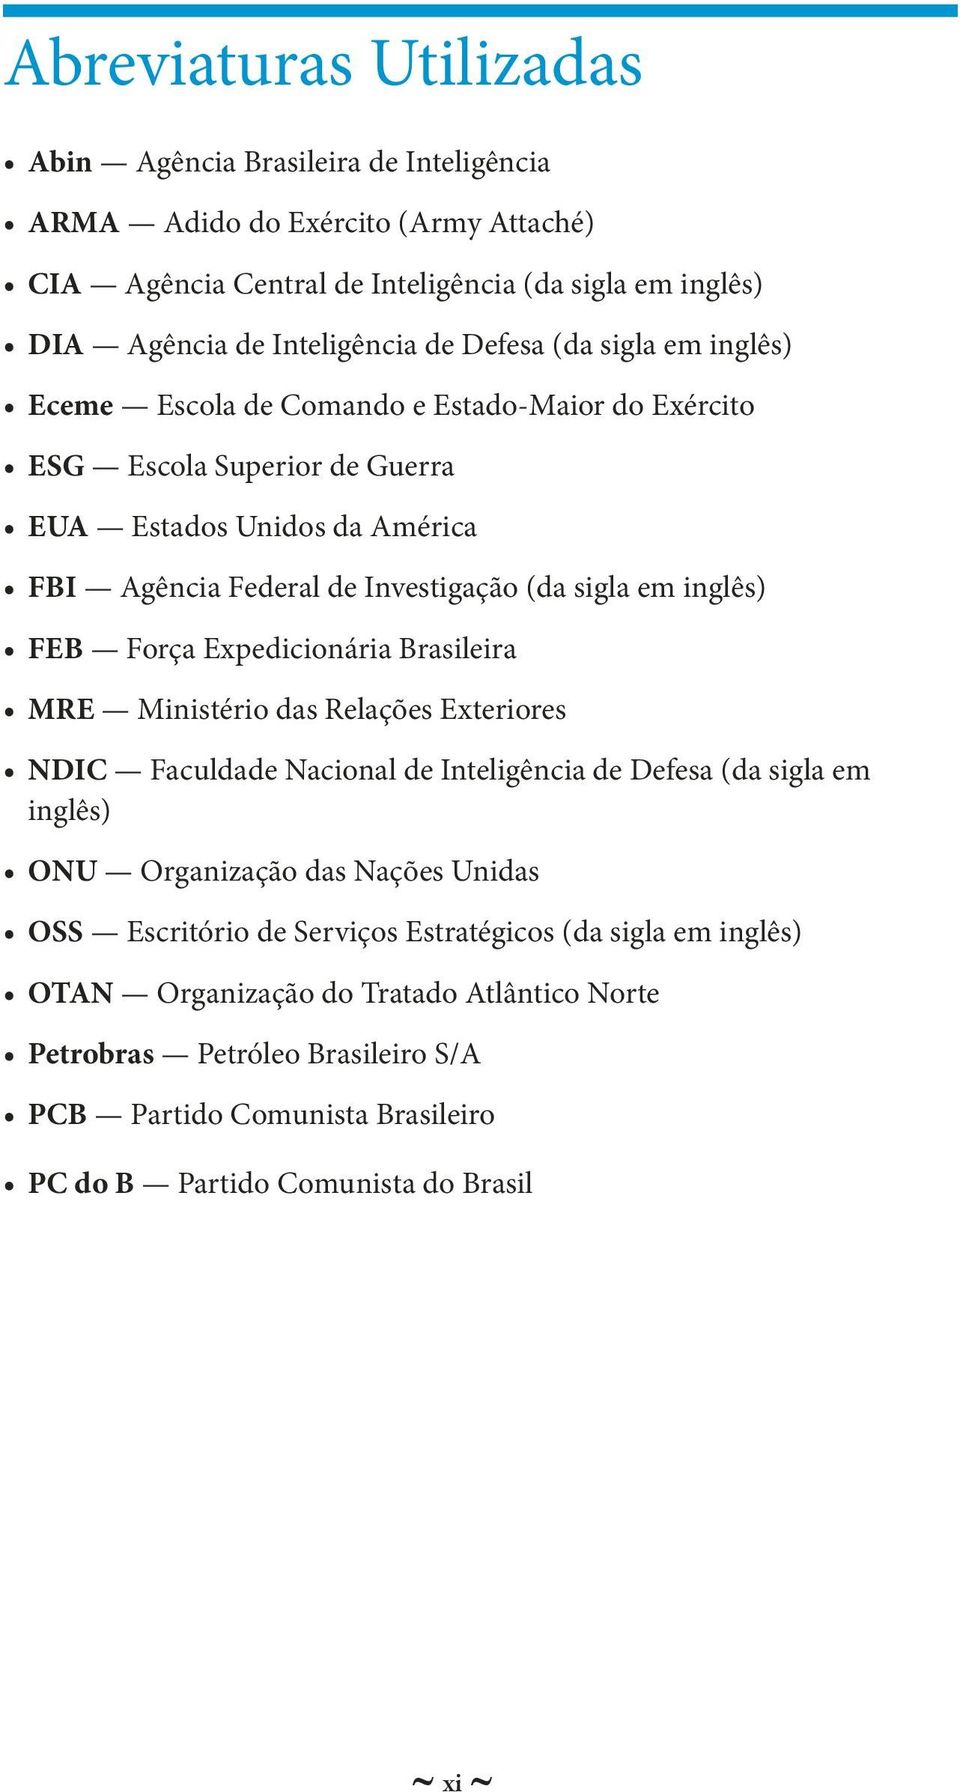 inglês) FEB Força Expedicionária Brasileira MRE Ministério das Relações Exteriores NDIC Faculdade Nacional de Inteligência de Defesa (da sigla em inglês) ONU Organização das Nações Unidas OSS